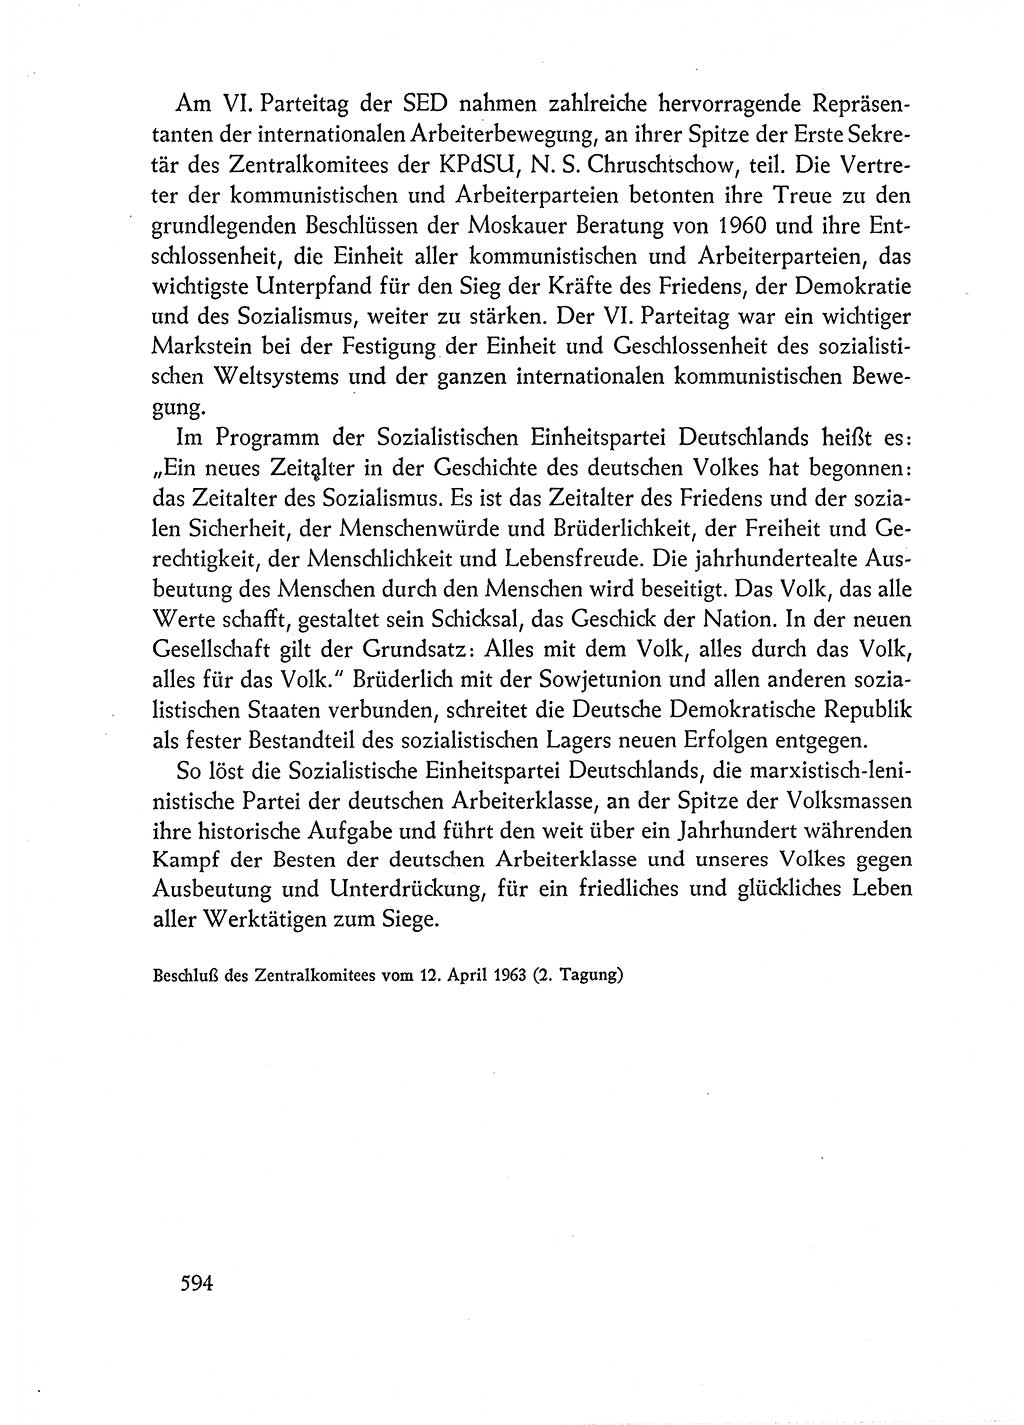 Dokumente der Sozialistischen Einheitspartei Deutschlands (SED) [Deutsche Demokratische Republik (DDR)] 1962-1963, Seite 594 (Dok. SED DDR 1962-1963, S. 594)